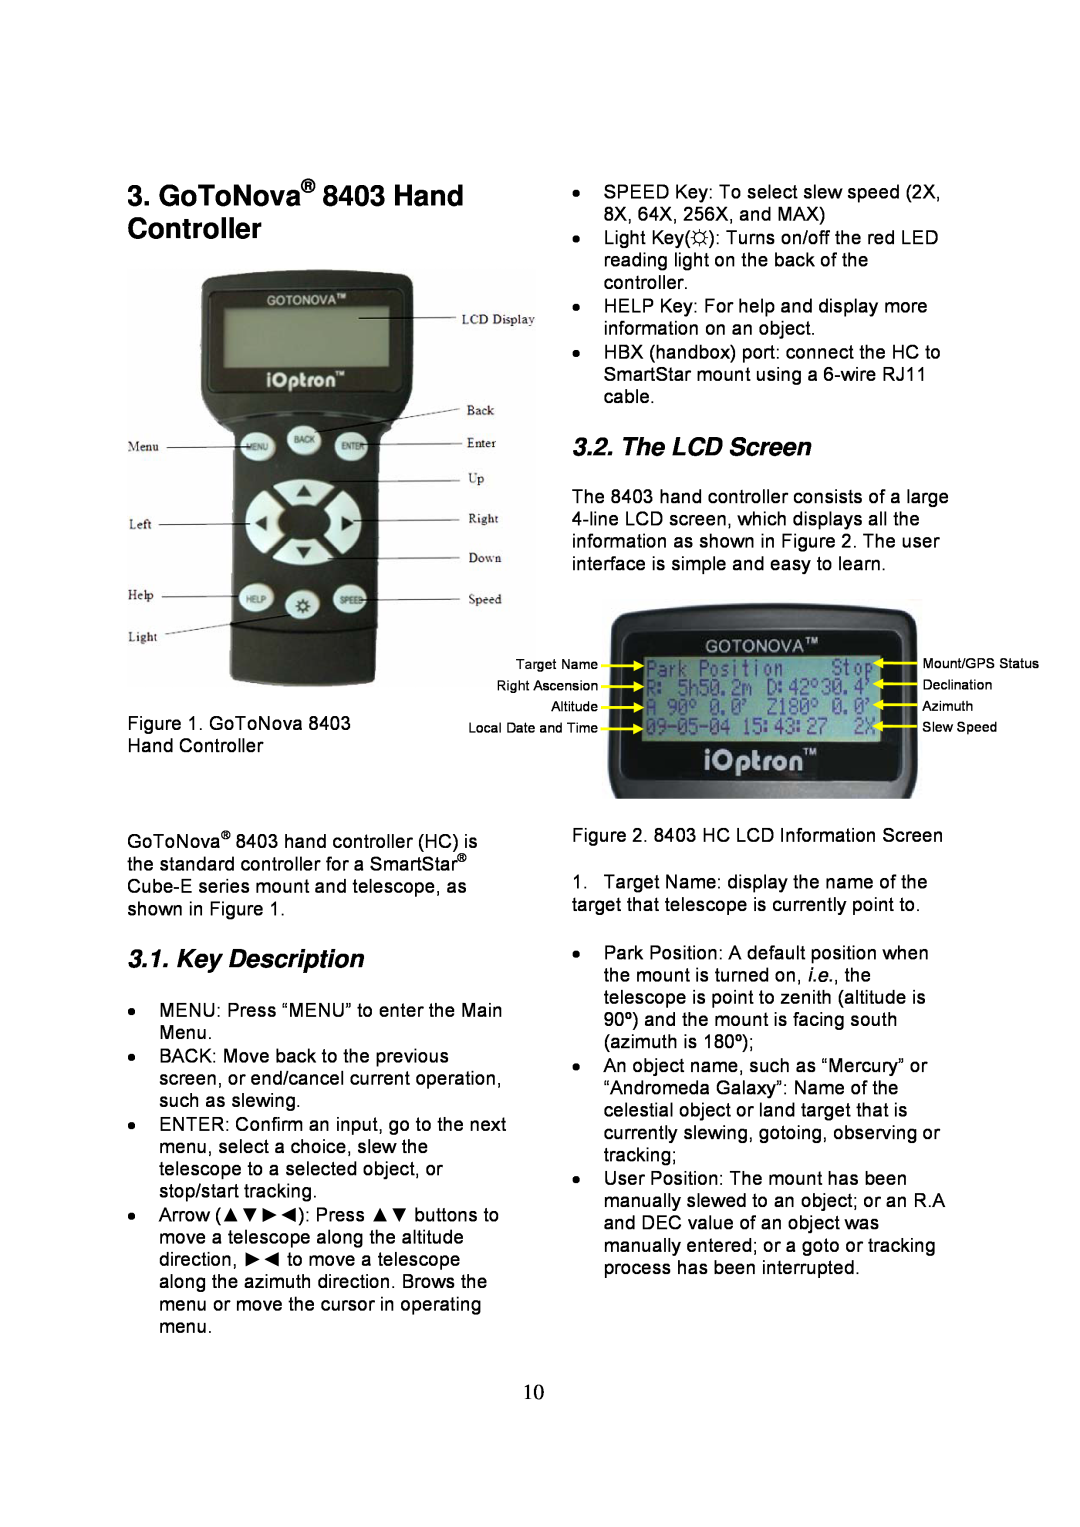 iOptron 8502, 8503, 8504, 8500 instruction manual GoToNova 8403 Hand Controller, The LCD Screen, Key Description 